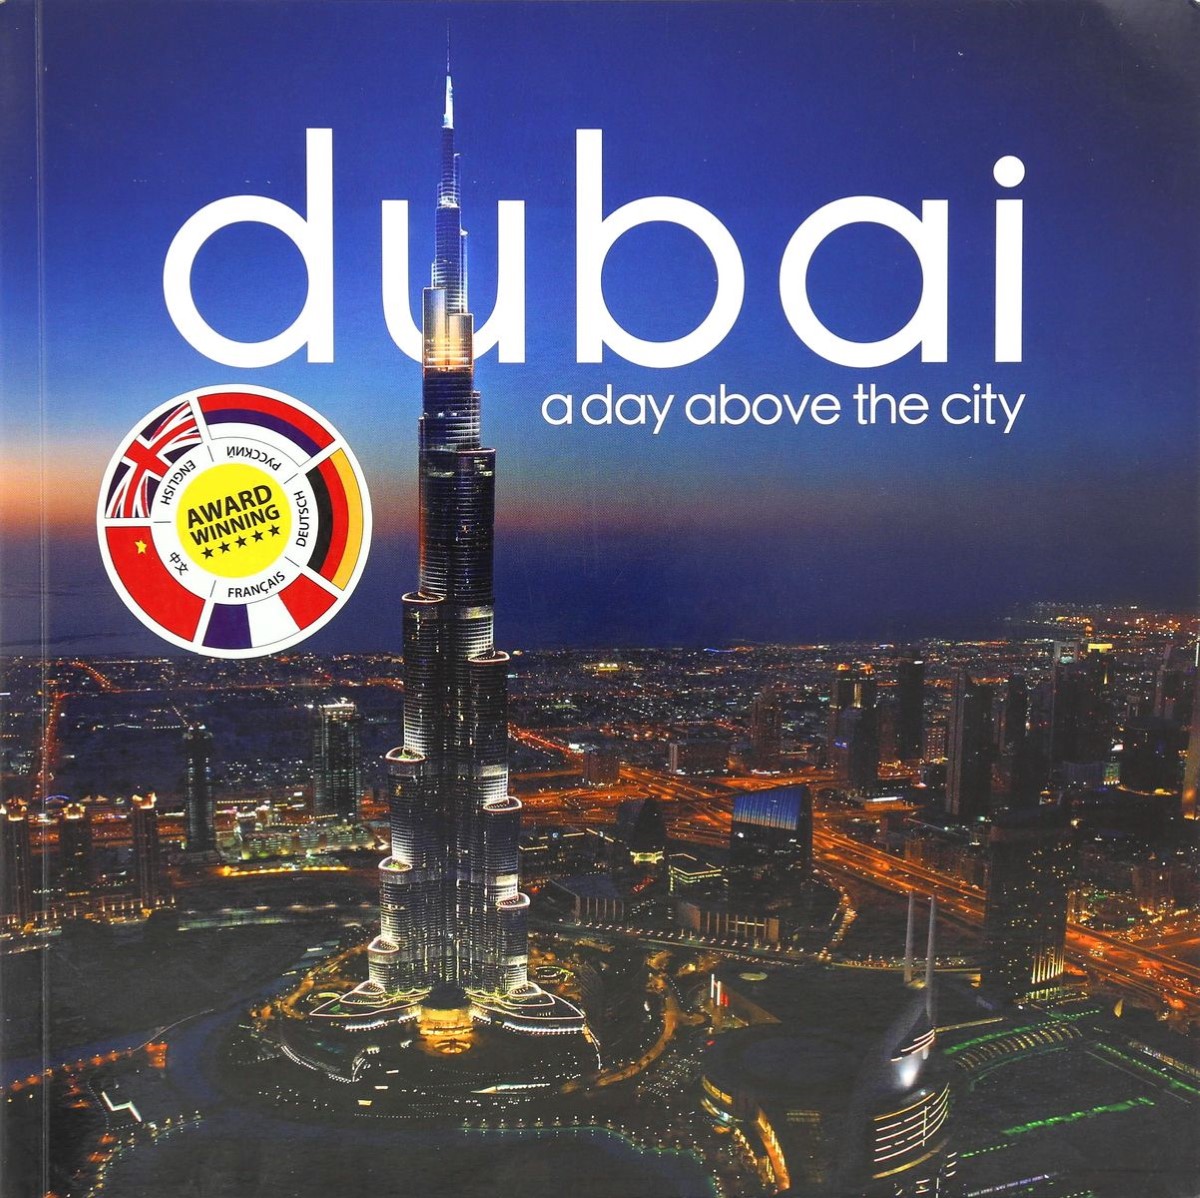 Dubai A Day Above the City Night | Explorer